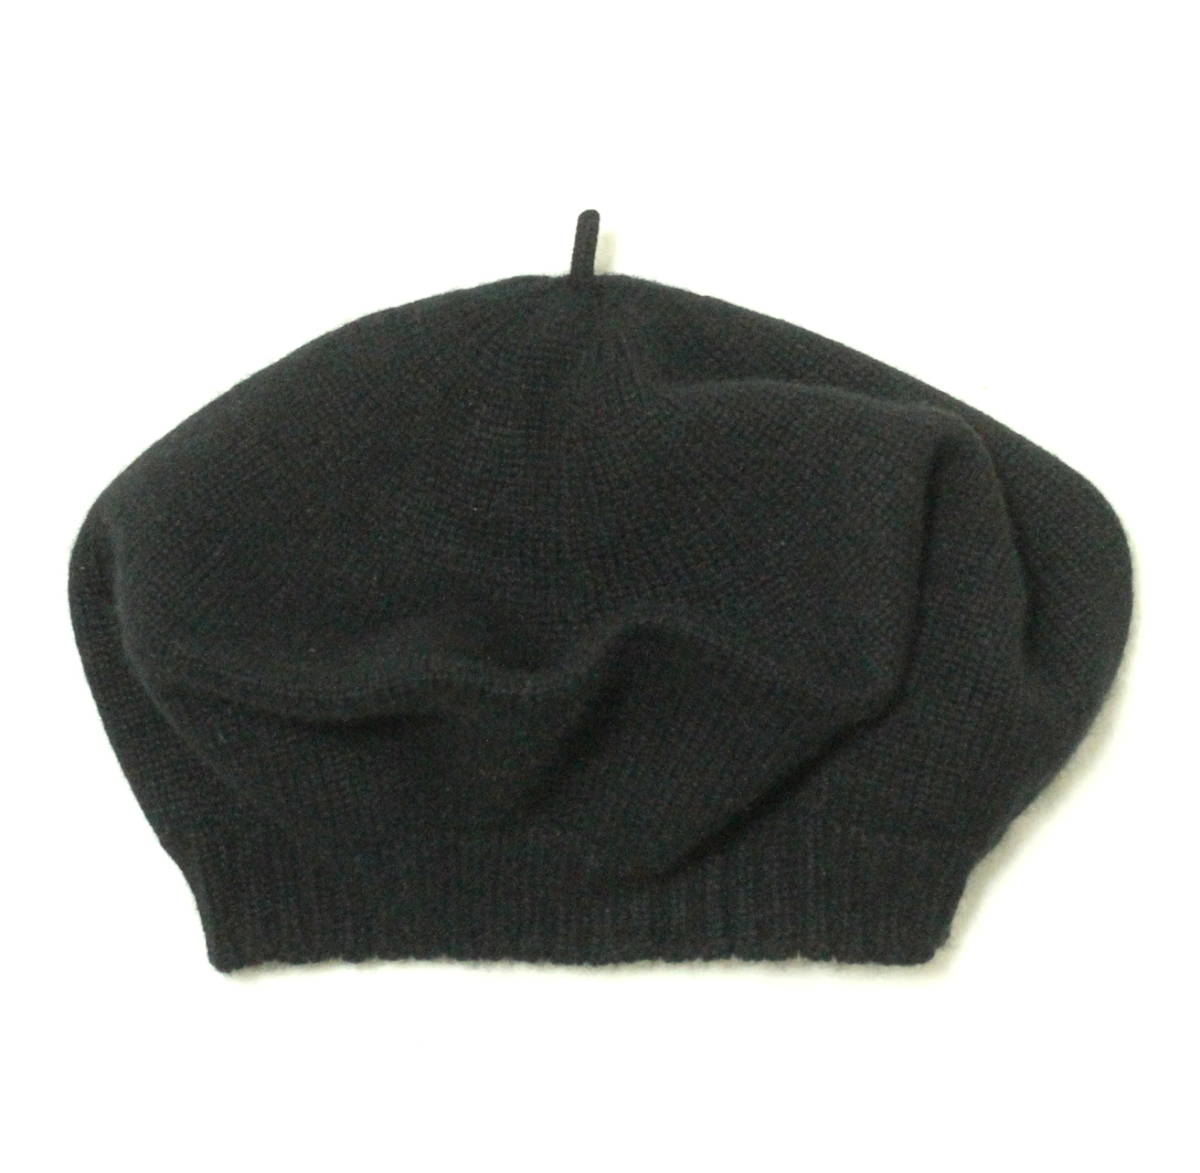 英国製 William Brunton カシミヤ100% ハンドニット ベレー帽 ニットキャップ ウォッチキャップ ニット帽 カシミア ウィリアムブラントン